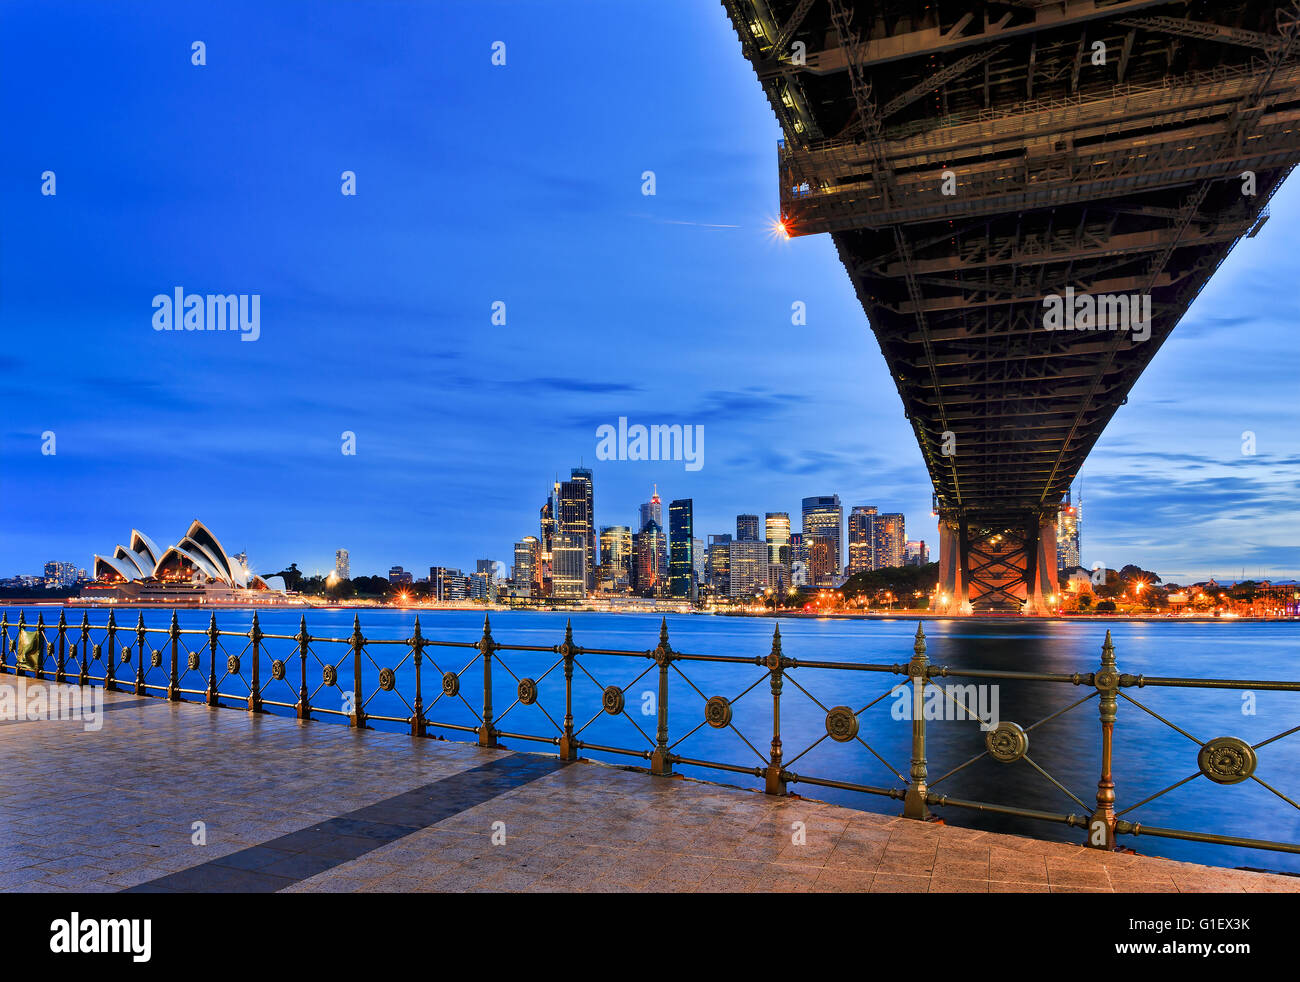 Principali città di Sydney clandmarks - Harbour Bridge, Circular Quay e il CBD di grattacieli al tramonto su porto dalla Milsons Point. Foto Stock